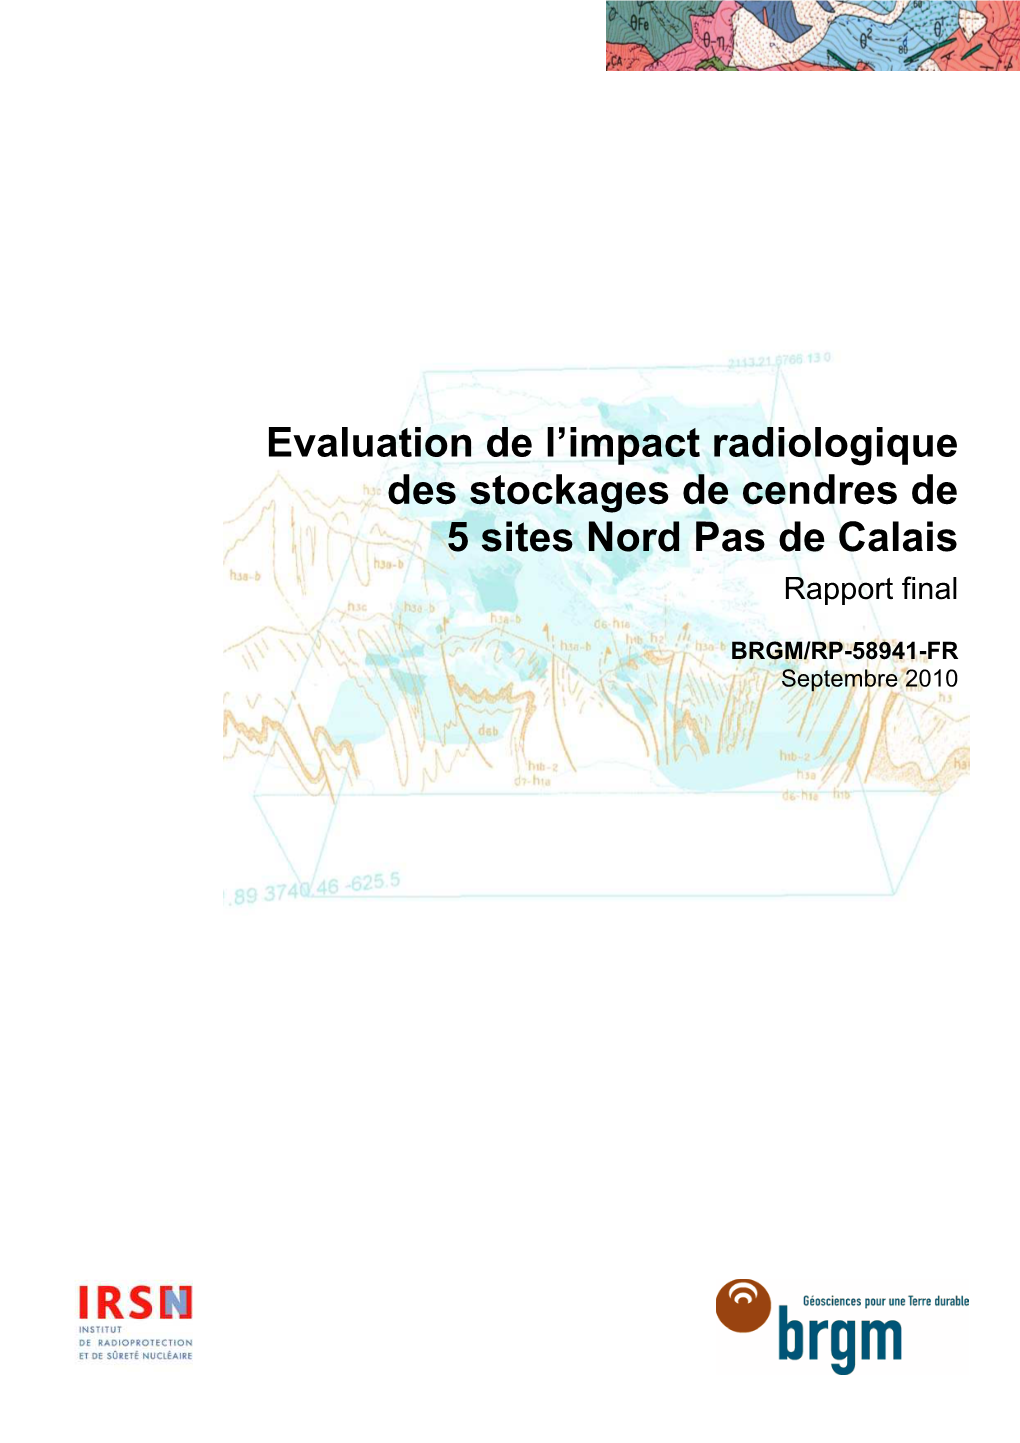 Evaluation De L'impact Radiologique Des Stockages De Cendres De 5